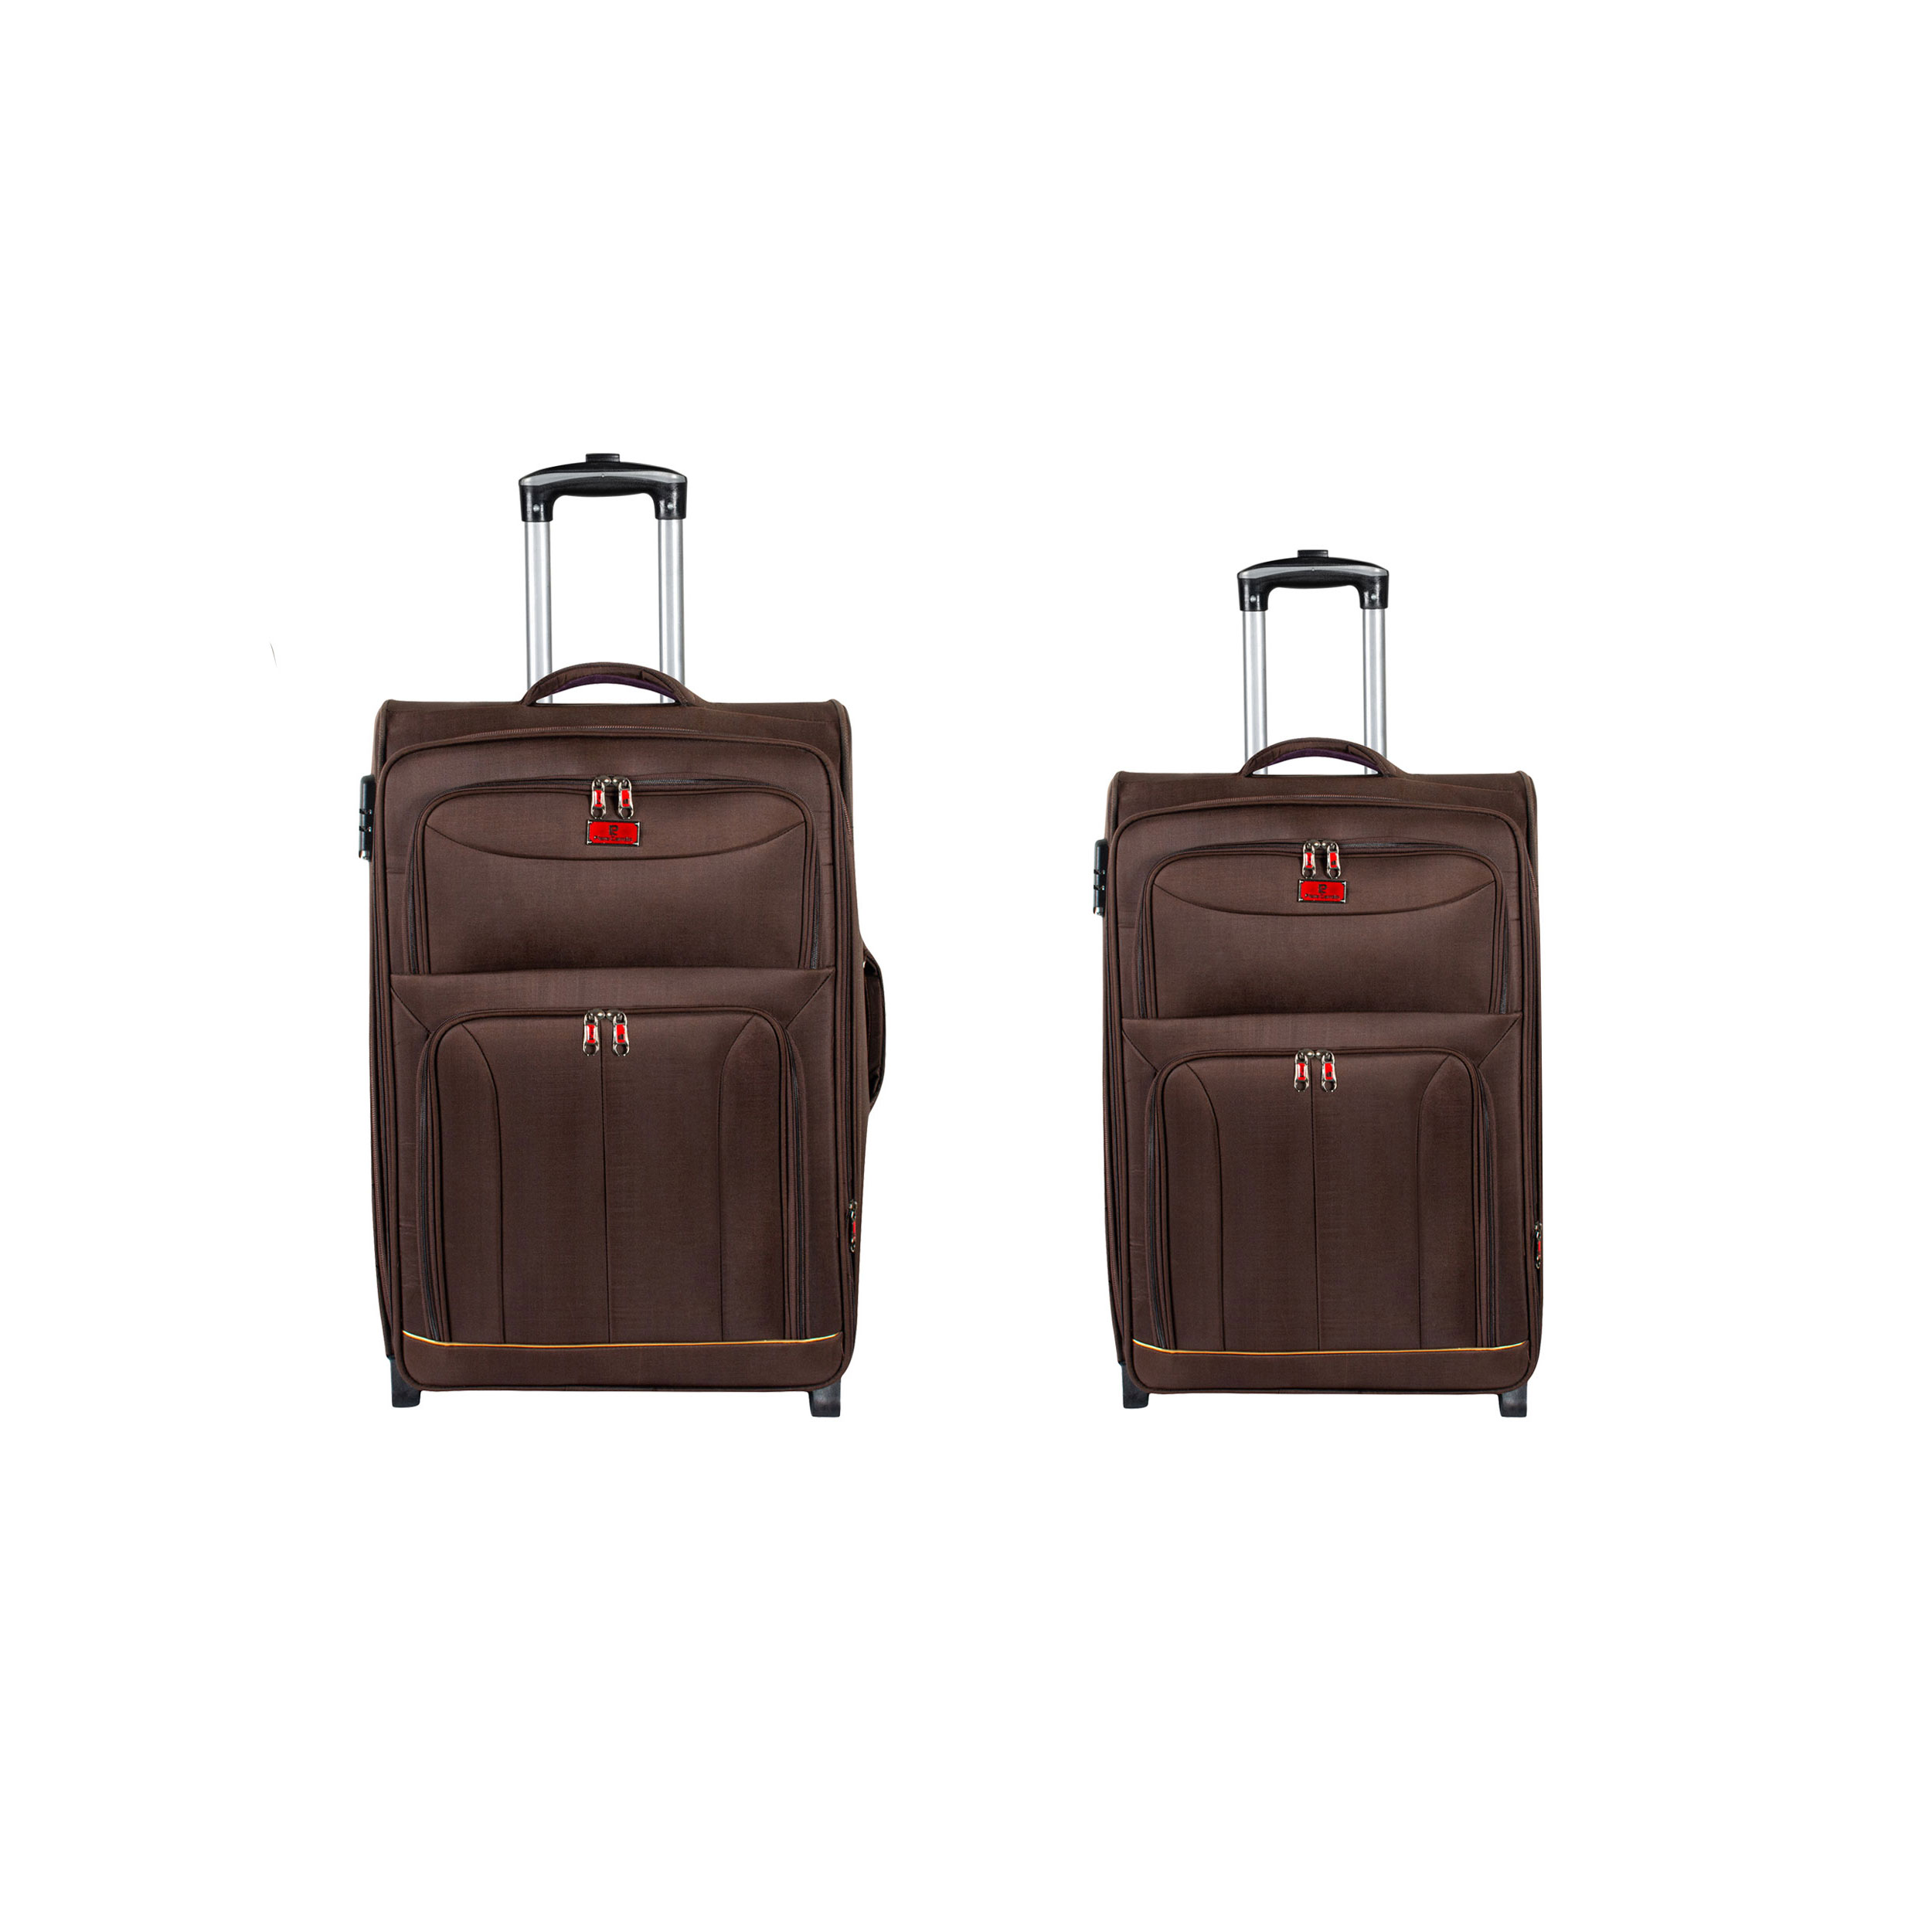  مجموعه دو عددی چمدان پیر کاردین مدل DY-5050C کد M-K